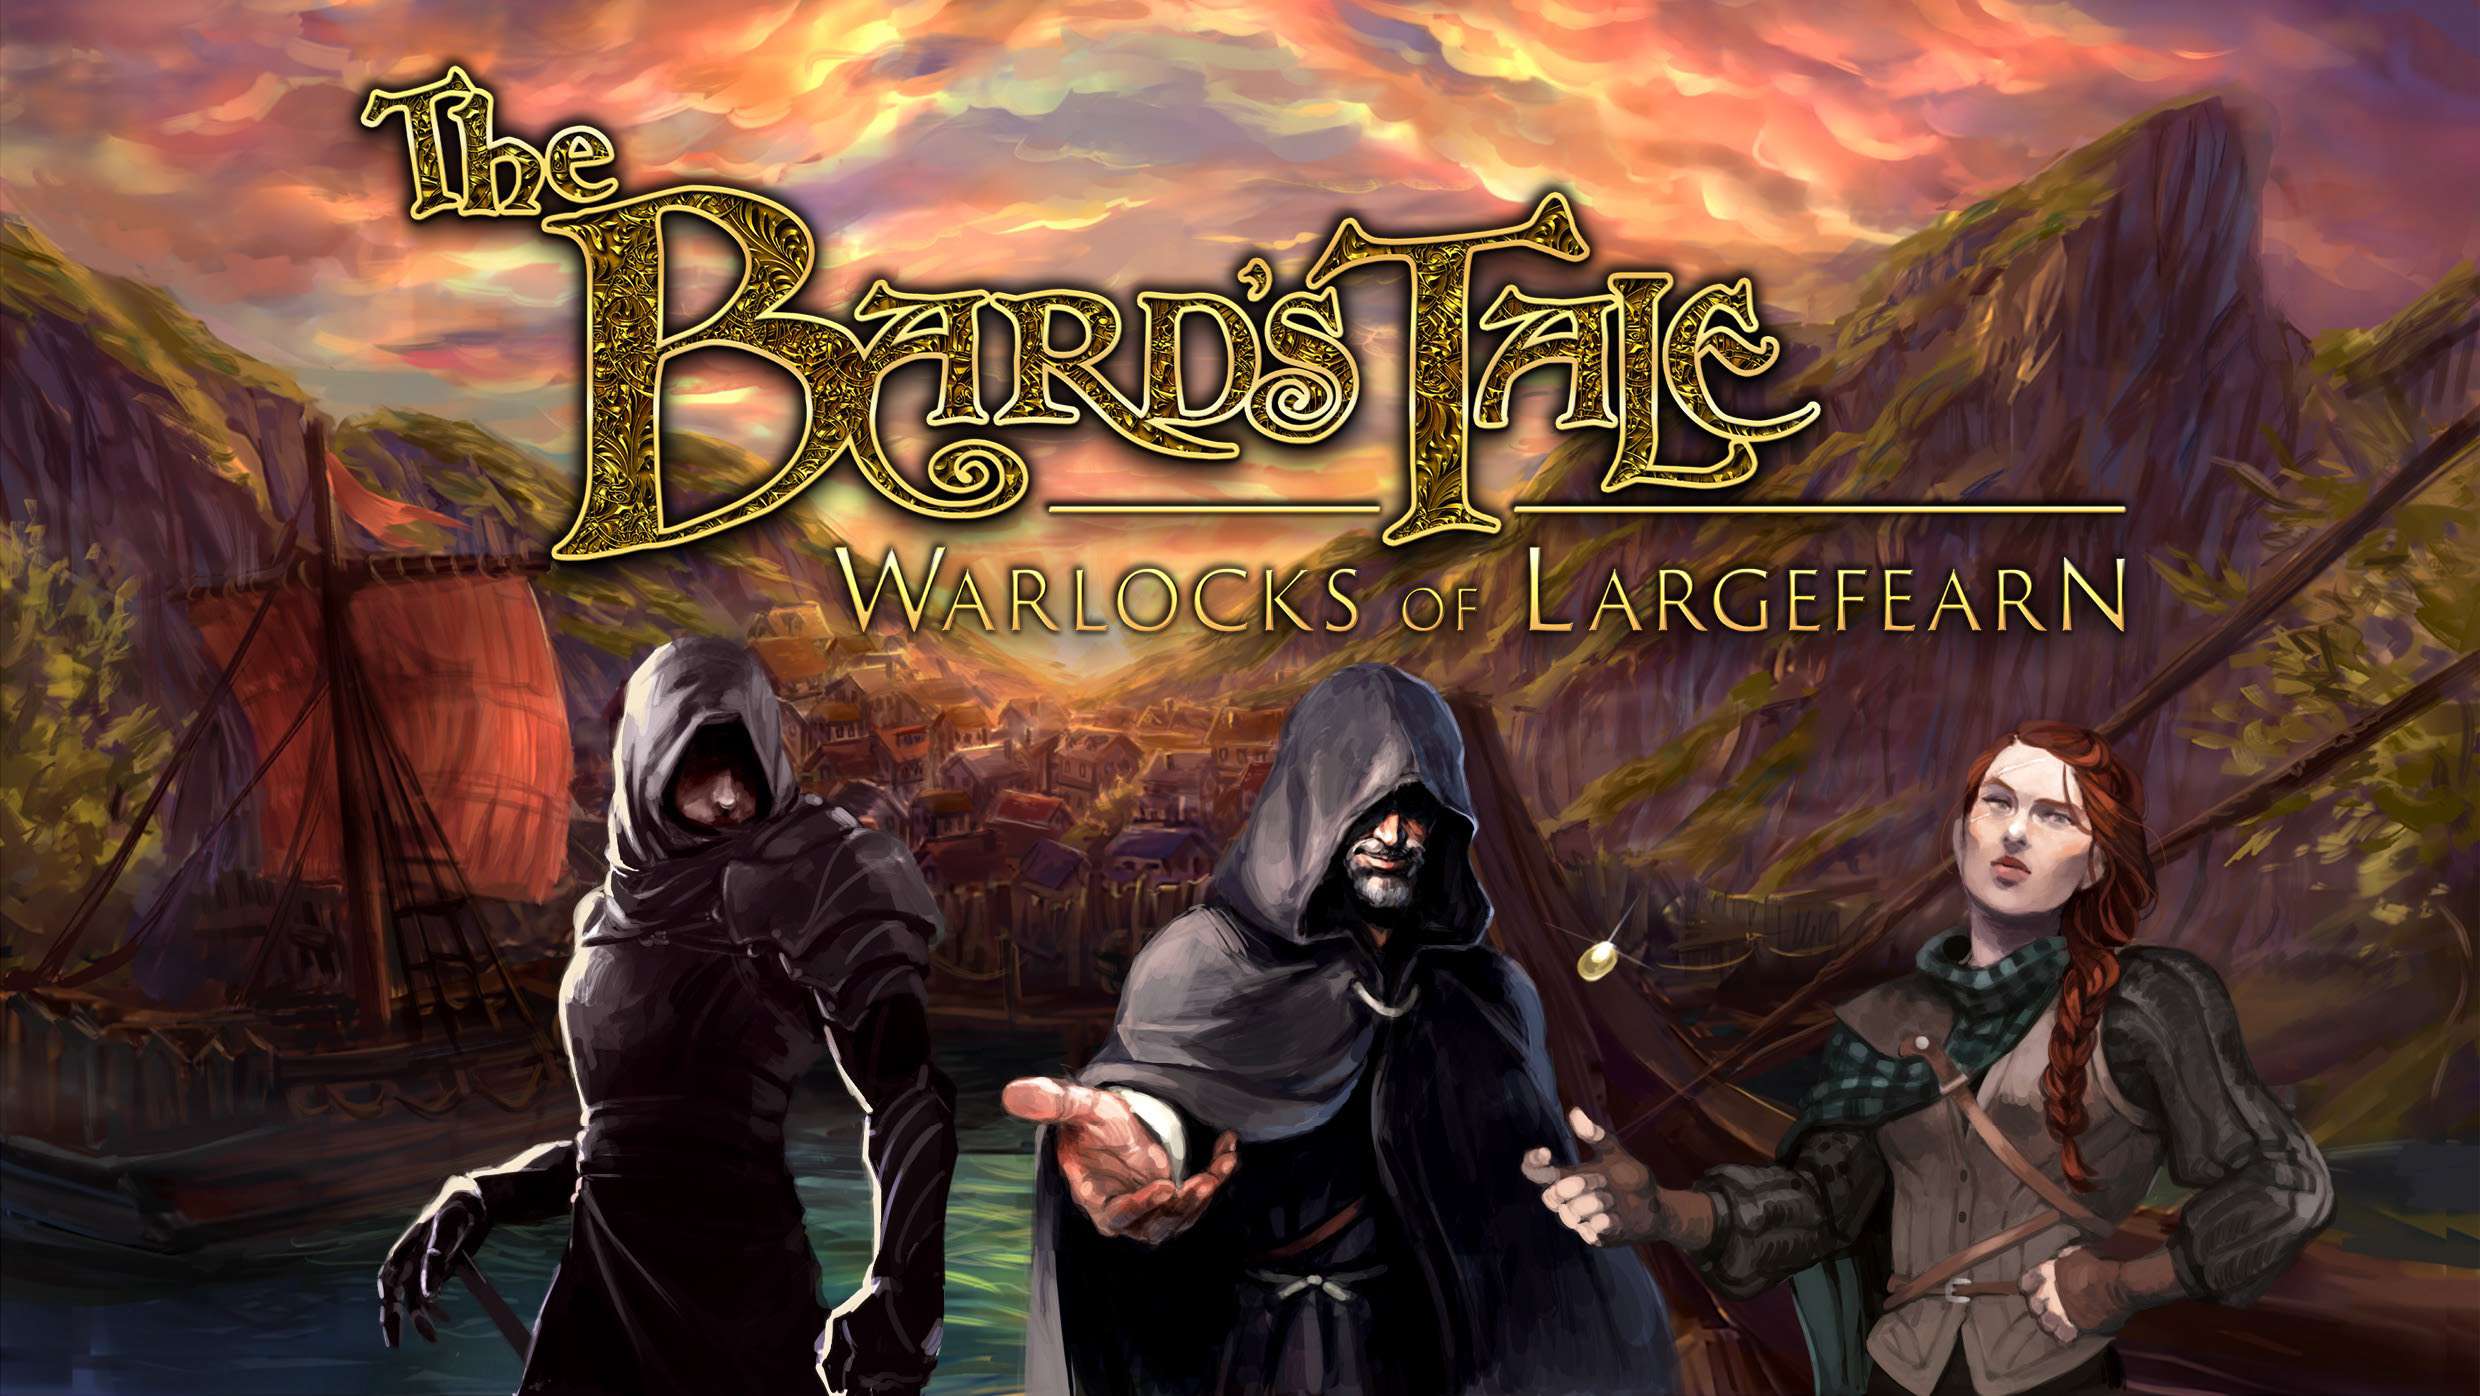 The Beard's Tale Warlocks of Largefearn